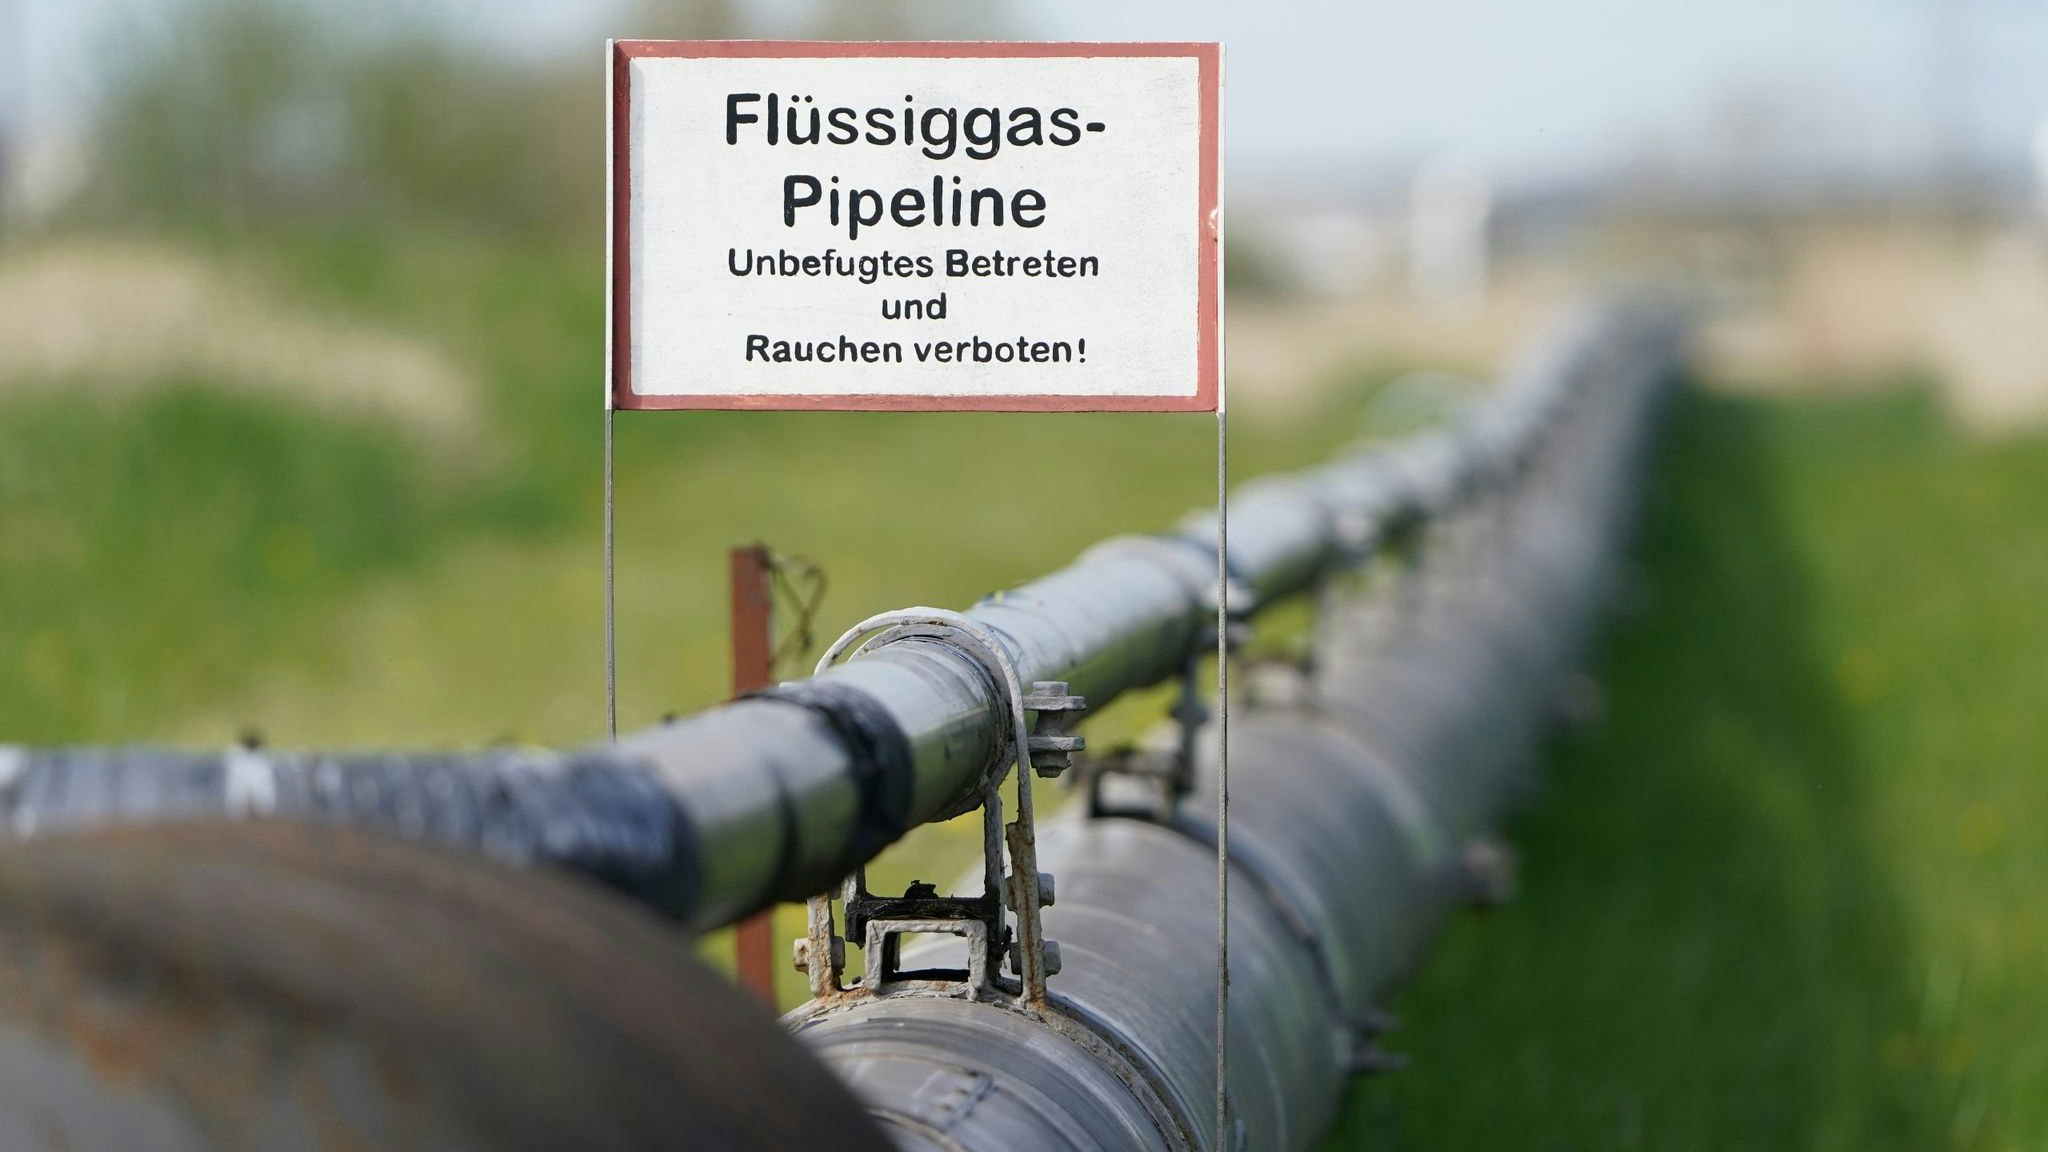 Der katarische Energieriese Qatar Energy und Deutschland haben nach katarischen Angaben ein Gaslieferabkommen geschlossen. Foto: dpa/Brandt